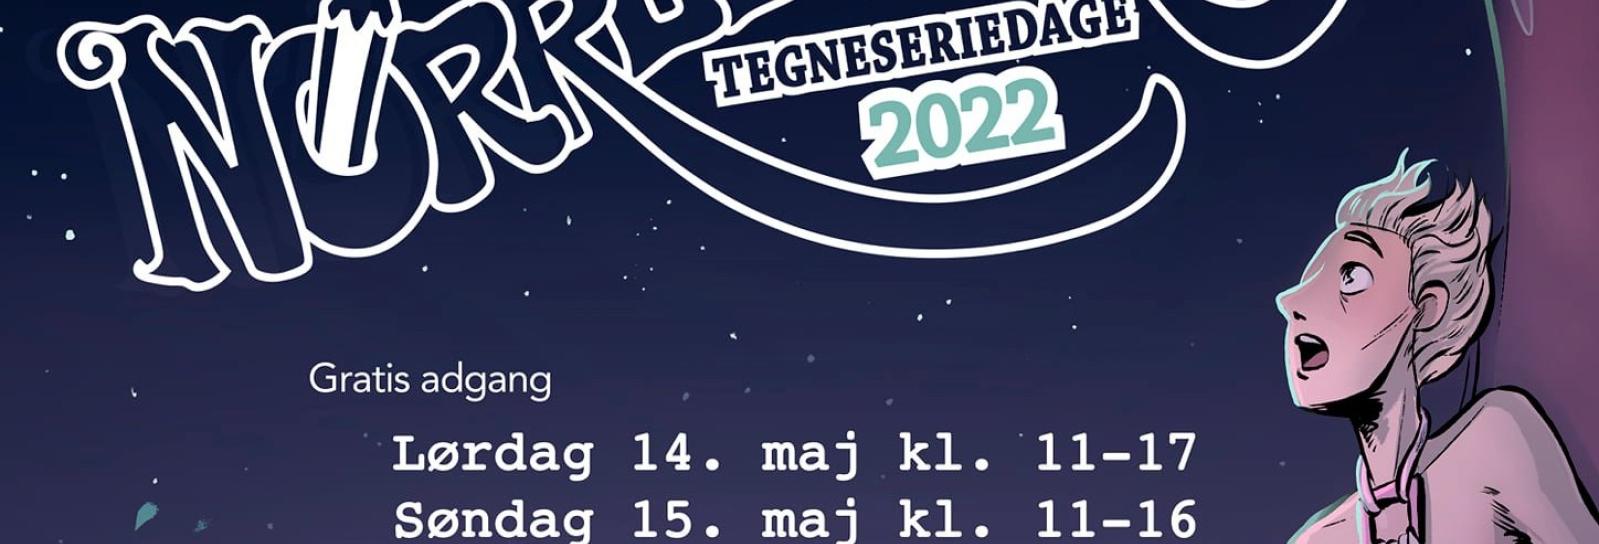 Nørrebronx Tegneseriedage 2022. Gratis adgang. Lørdag 14. maj kl. 11-17 og 15. maj kl. 11-16. 